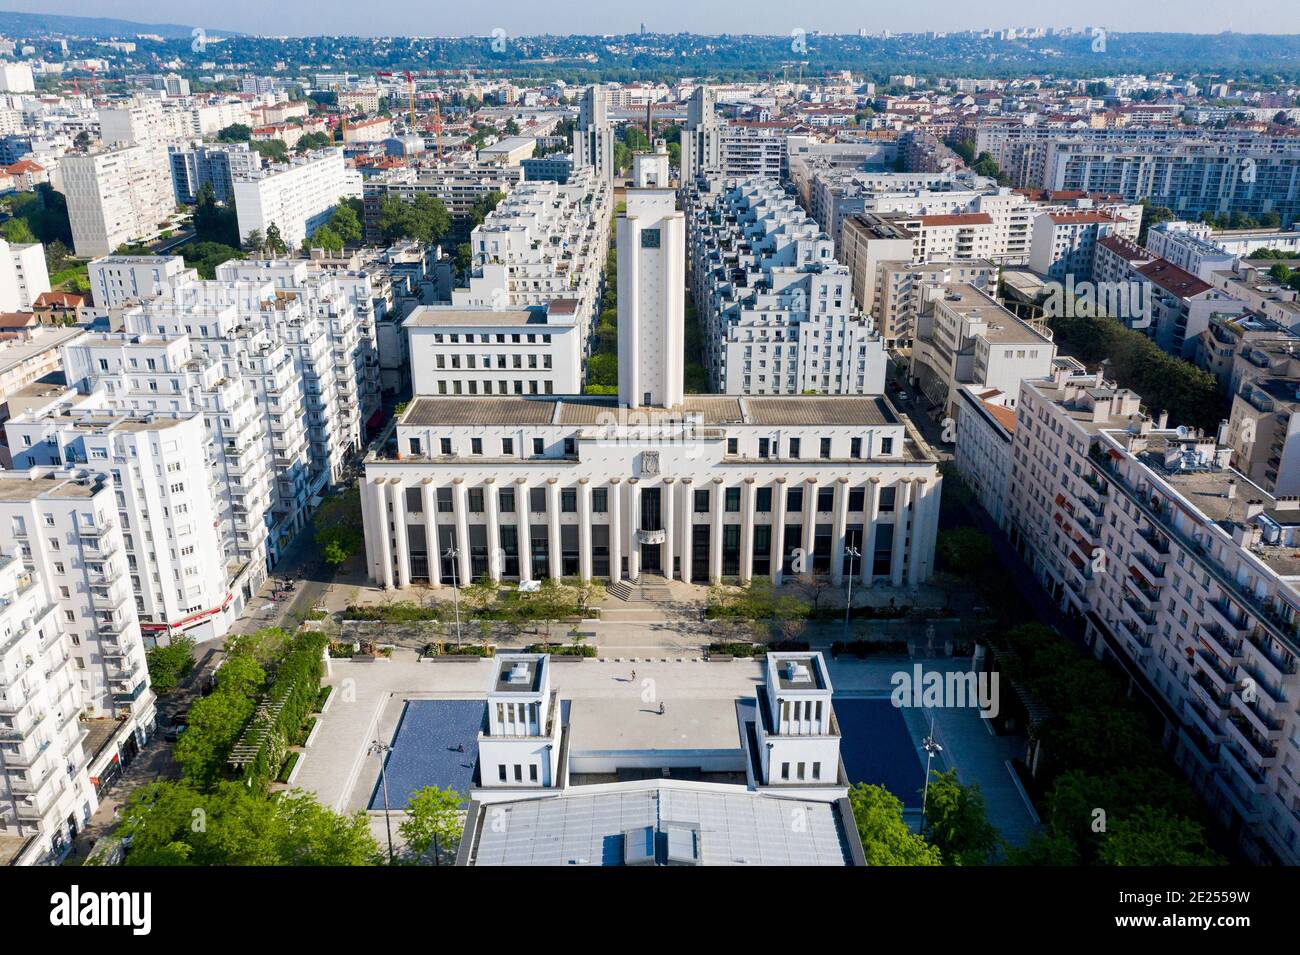 Villeurbanne (centro-este de Francia): Complejo arquitectónico “Les gratte-ciel” (los rascacielos) que consiste en la plaza “Place Lazare Goujon”, la ciudad Foto de stock